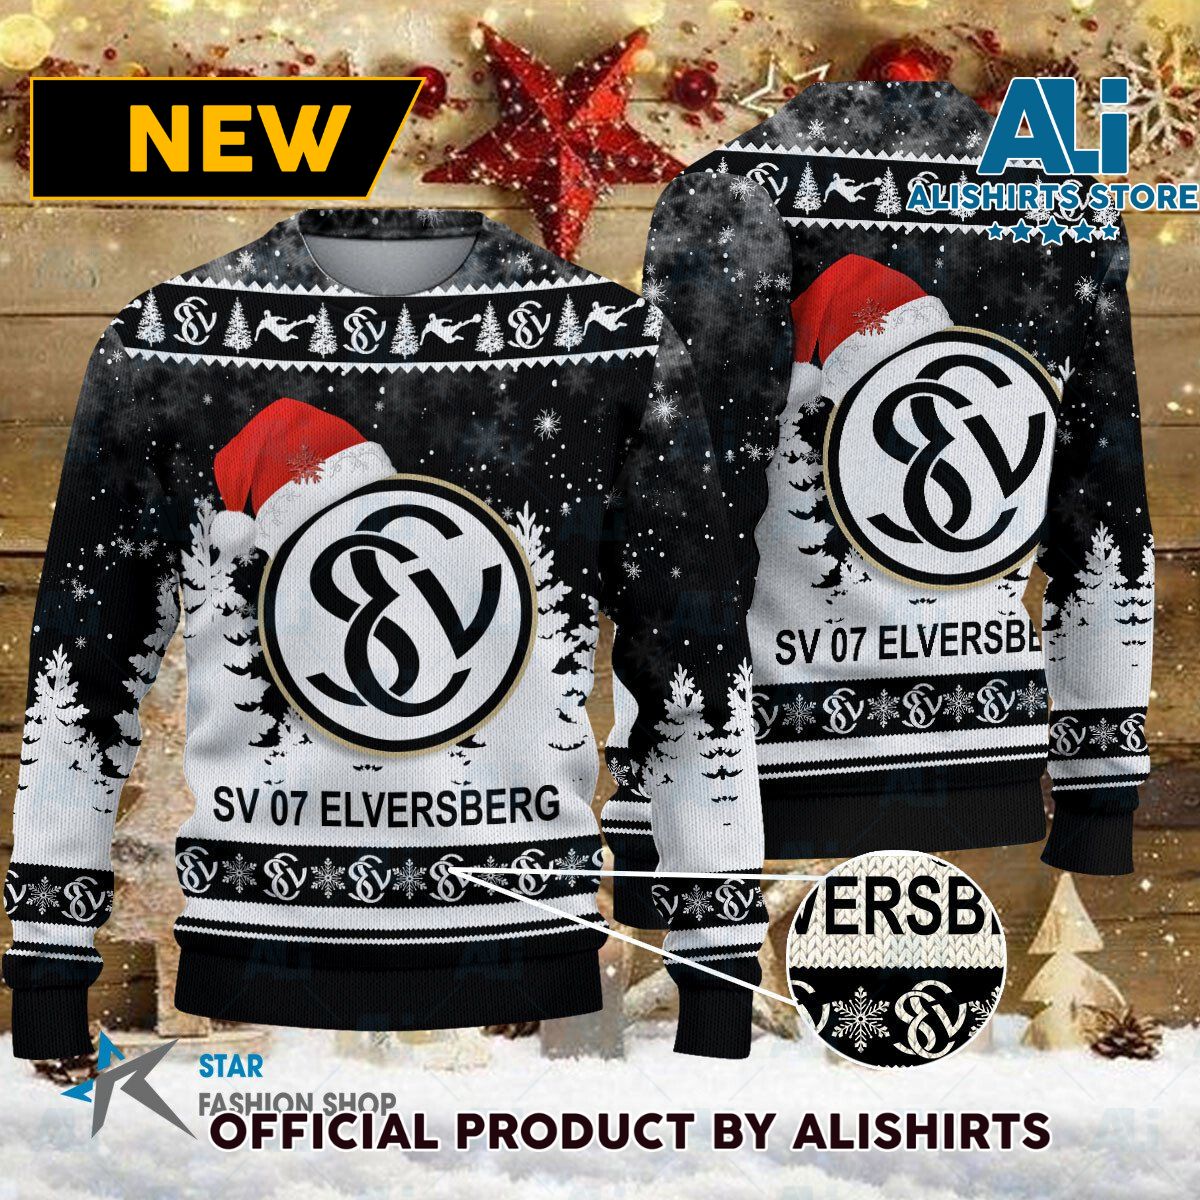 SV 07 Elversberg Bundesliga Football Christmas sweater jumper